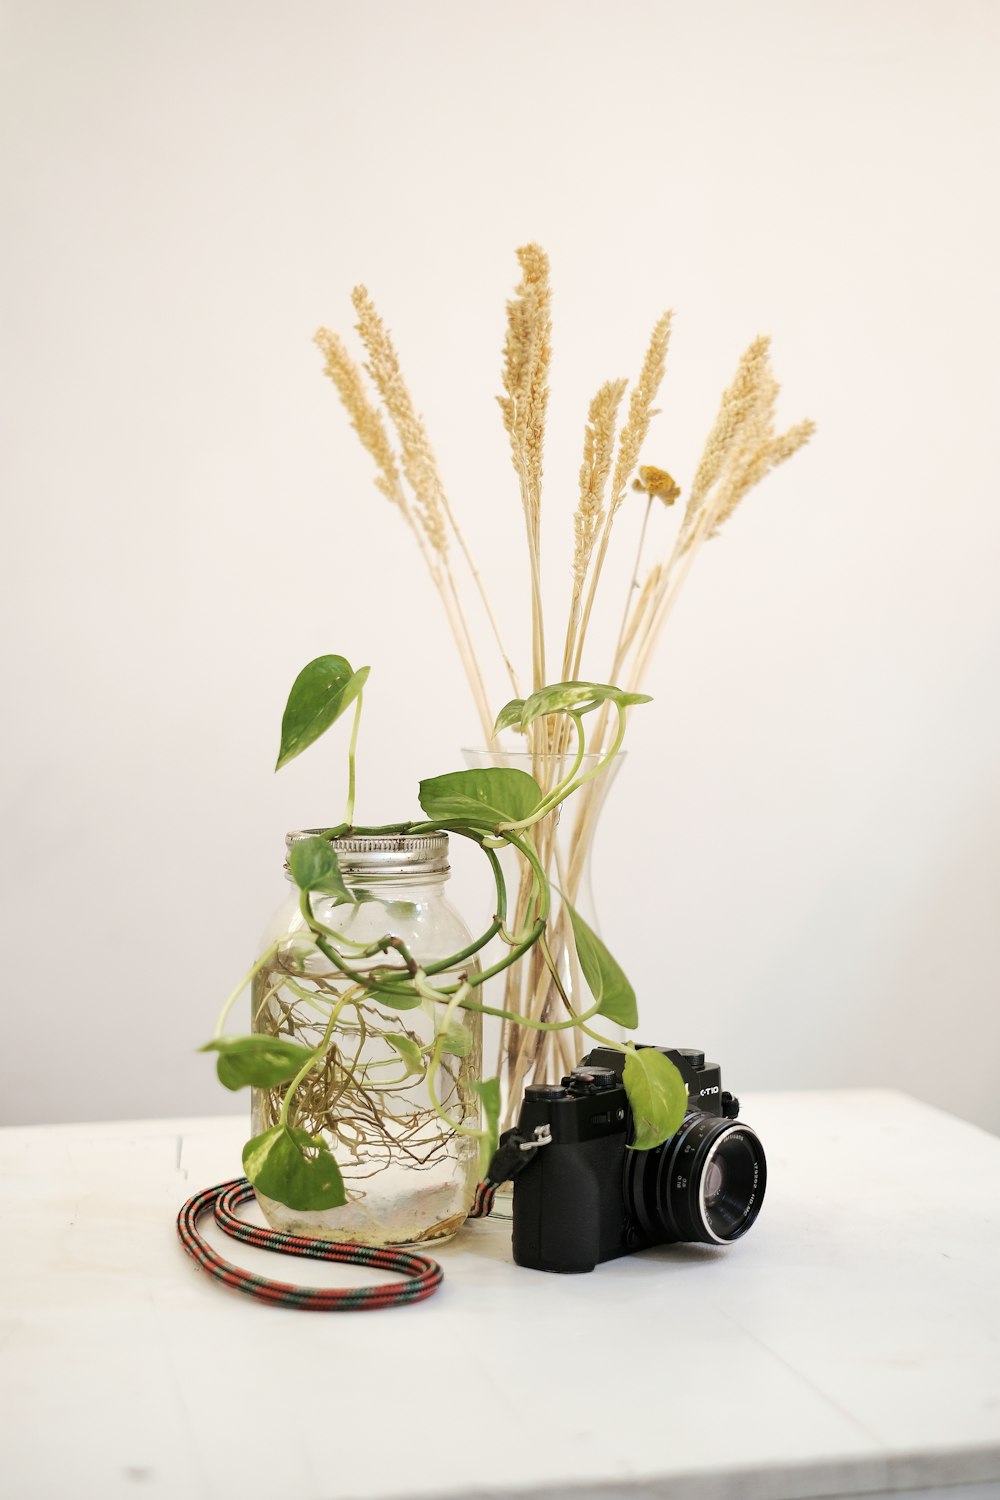 Appareil photo reflex numérique et plante sur table